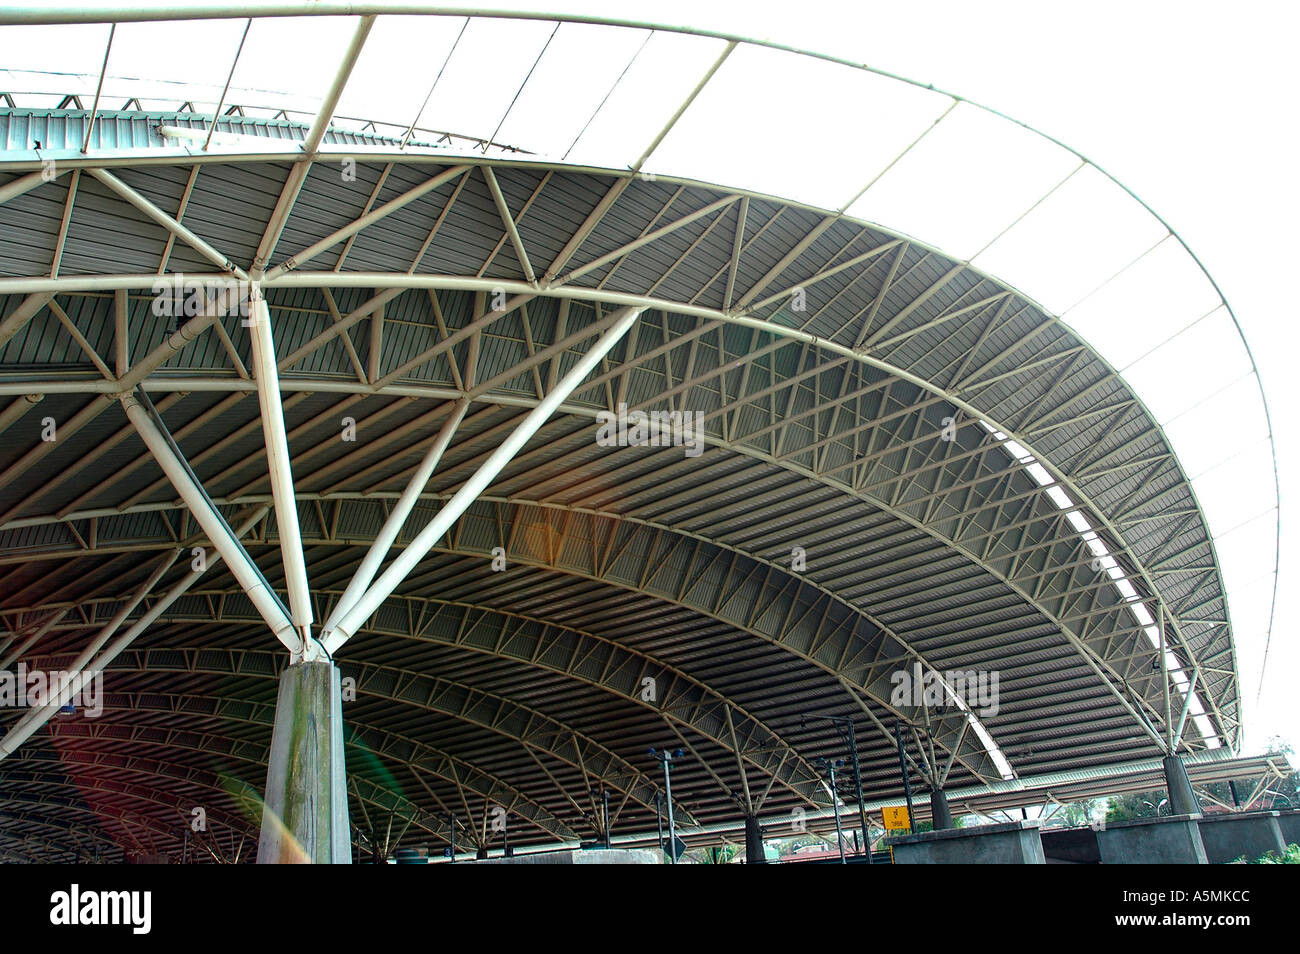 RAJ98885 Turbhe Bahnhof Dach Decke im Bau Navi Mumbai Vashi Bombay Maharashtra, Indien Stockfoto